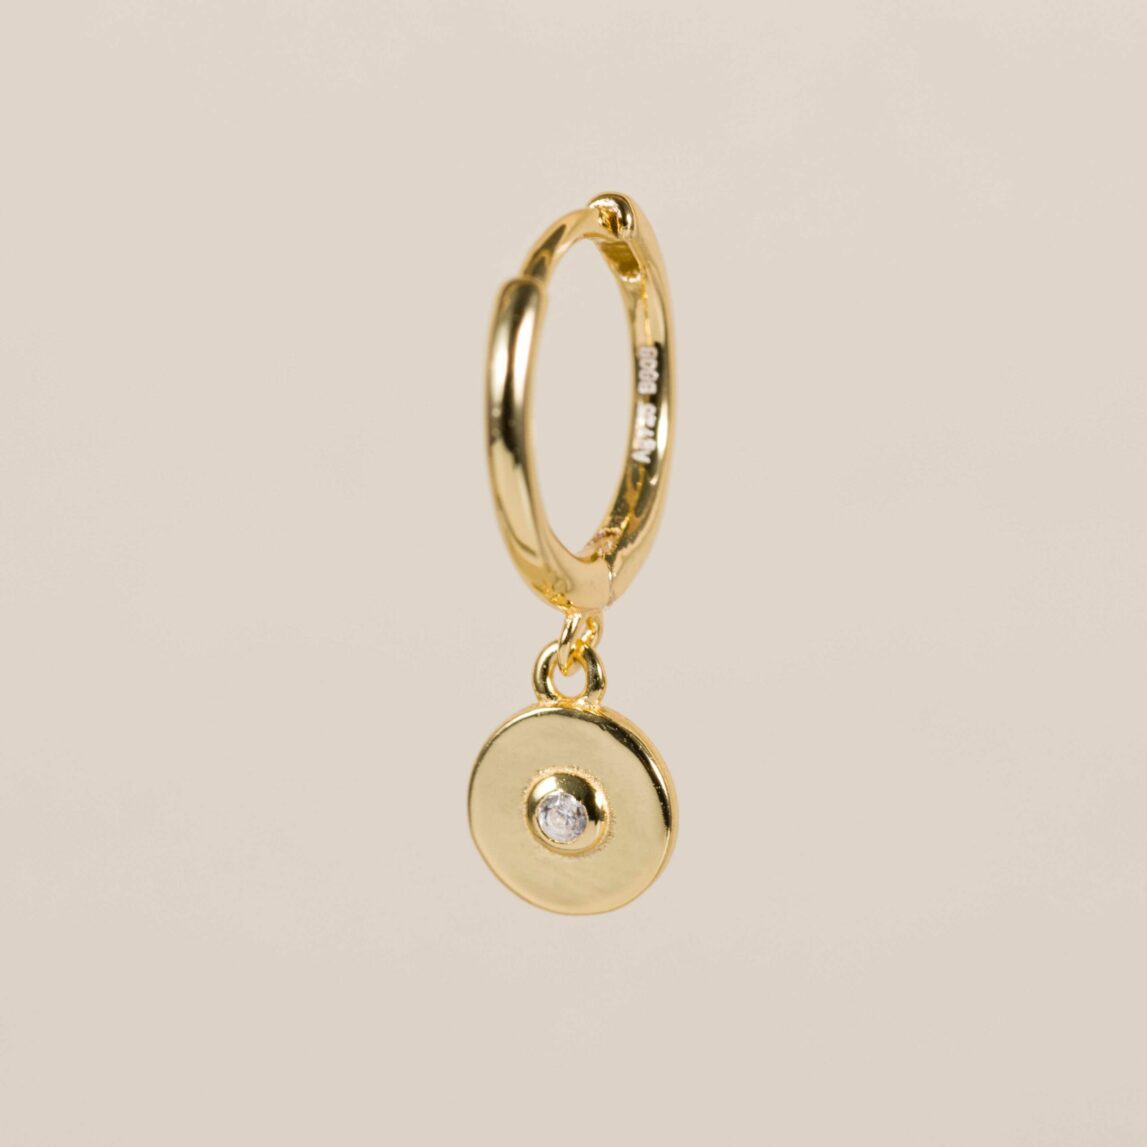 El mini aro círculo brillante es un piercing de oreja perfecto para combinarlo con pendientes dorados, un aro pequeño dorado que te dará luz al rostro.